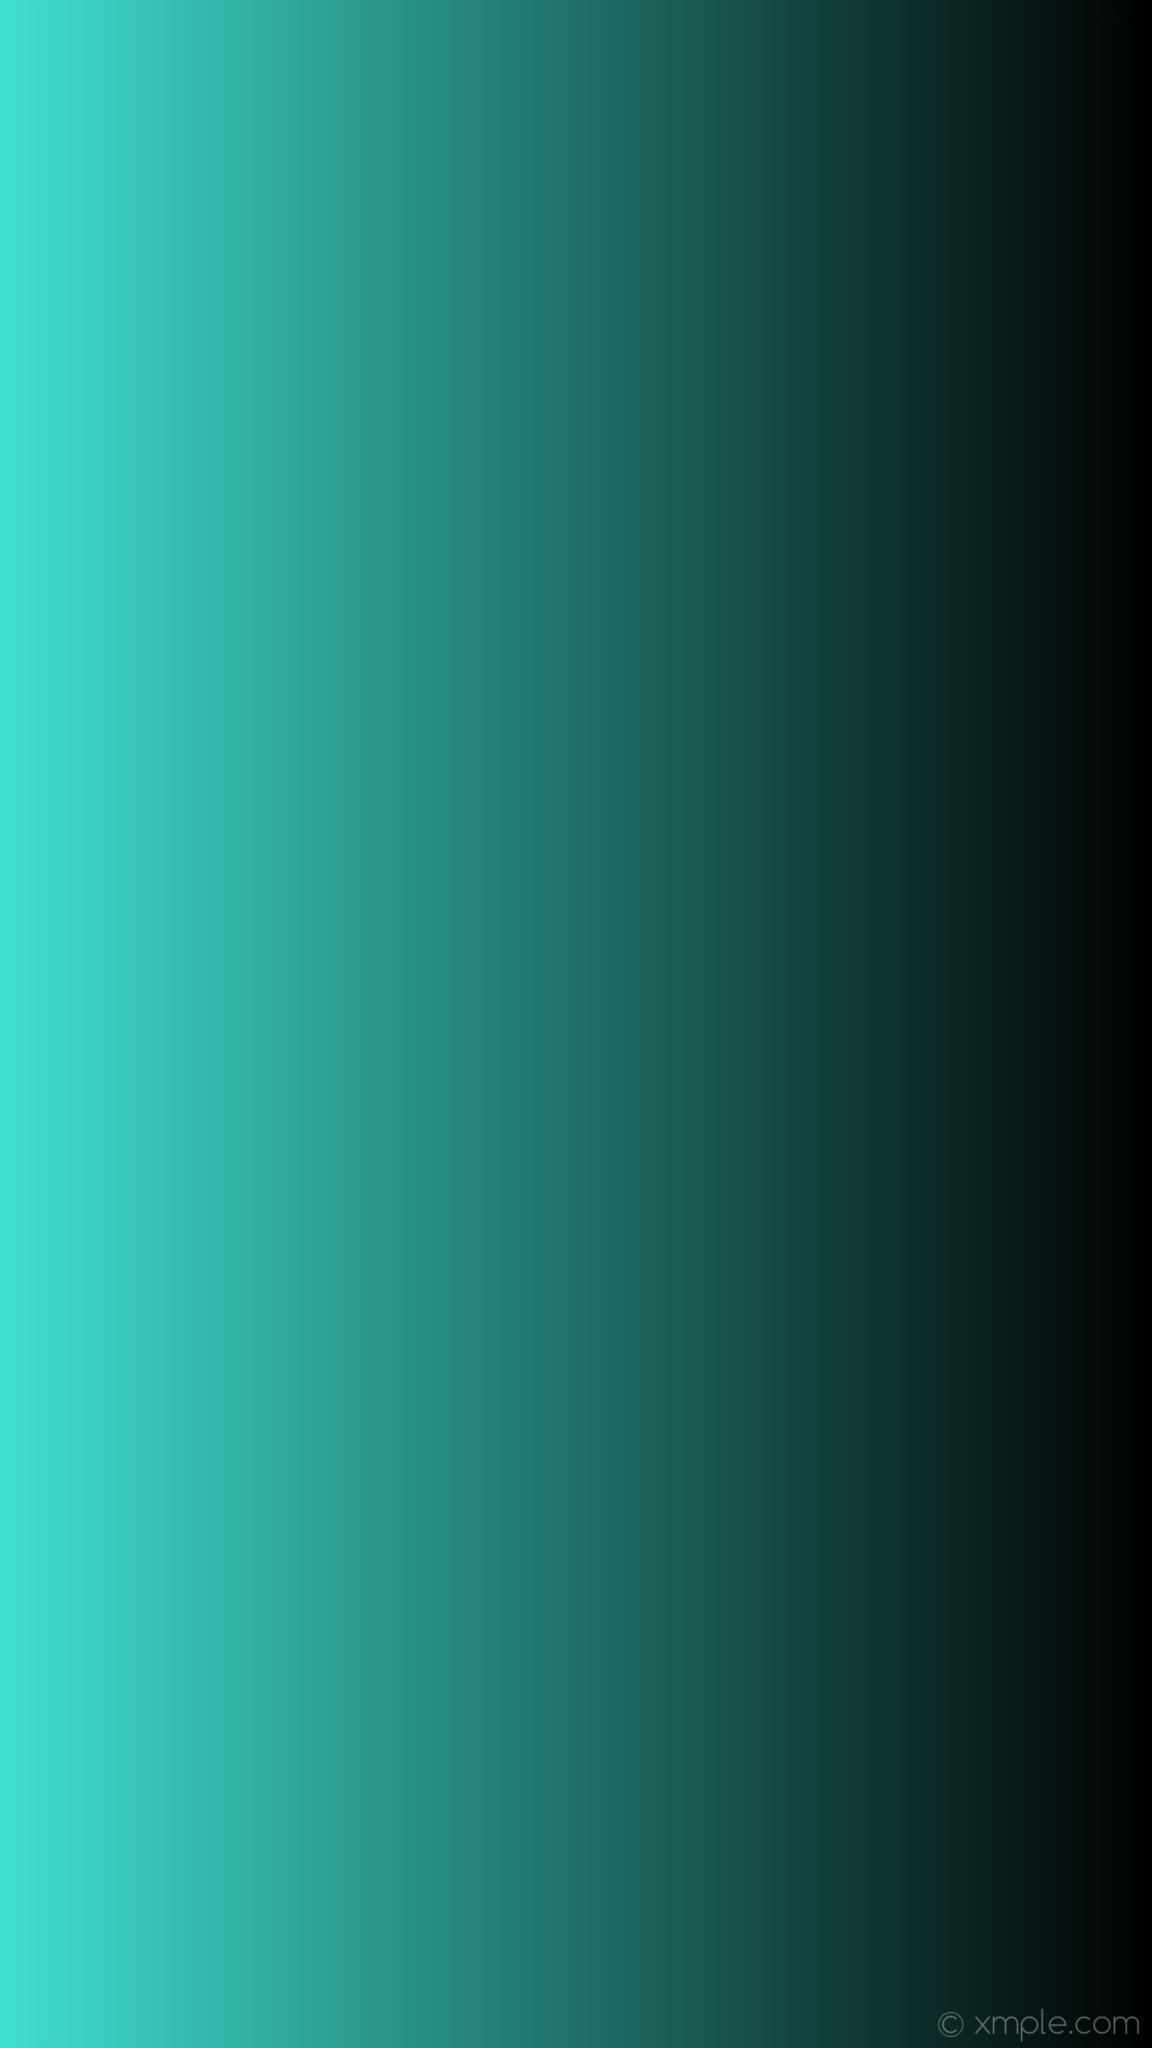 1152x2048 wallpaper linear black blue gradient turquoise #40e0d0 #000000 180Â°